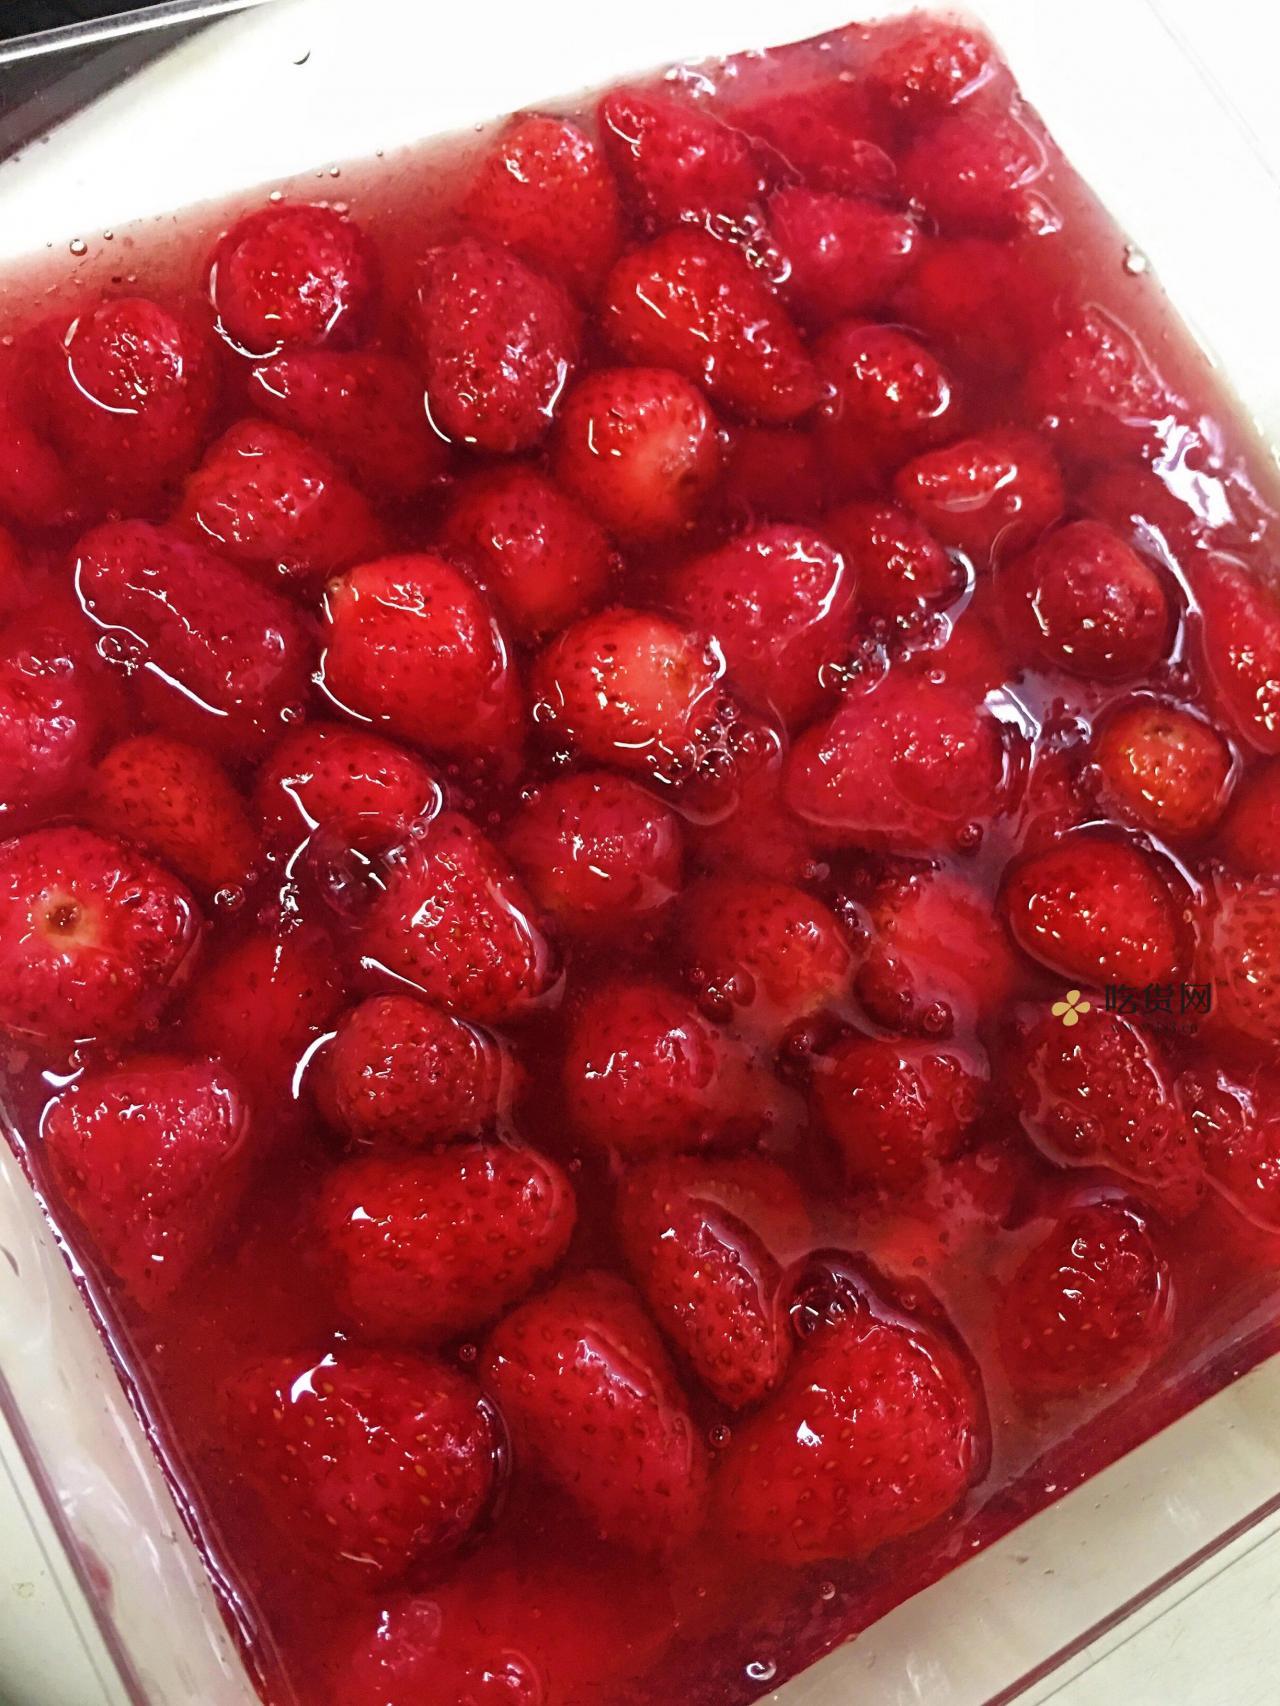 草莓果冻的照片图片